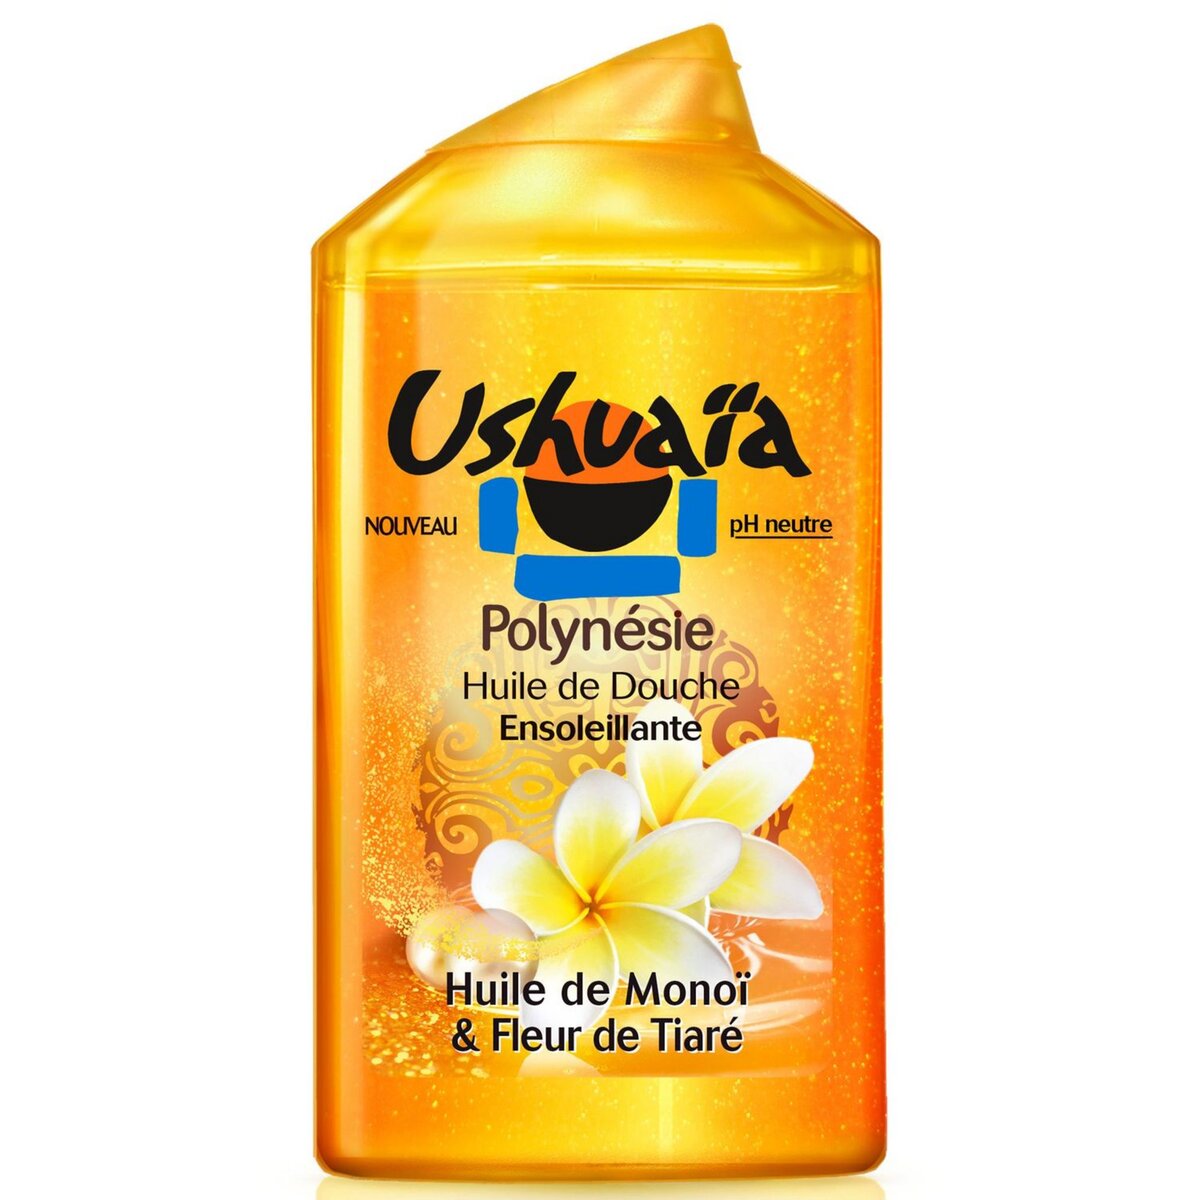 USHUAIA Huile de douche Polynésie huile de monoï et fleur de tiaré 250ml